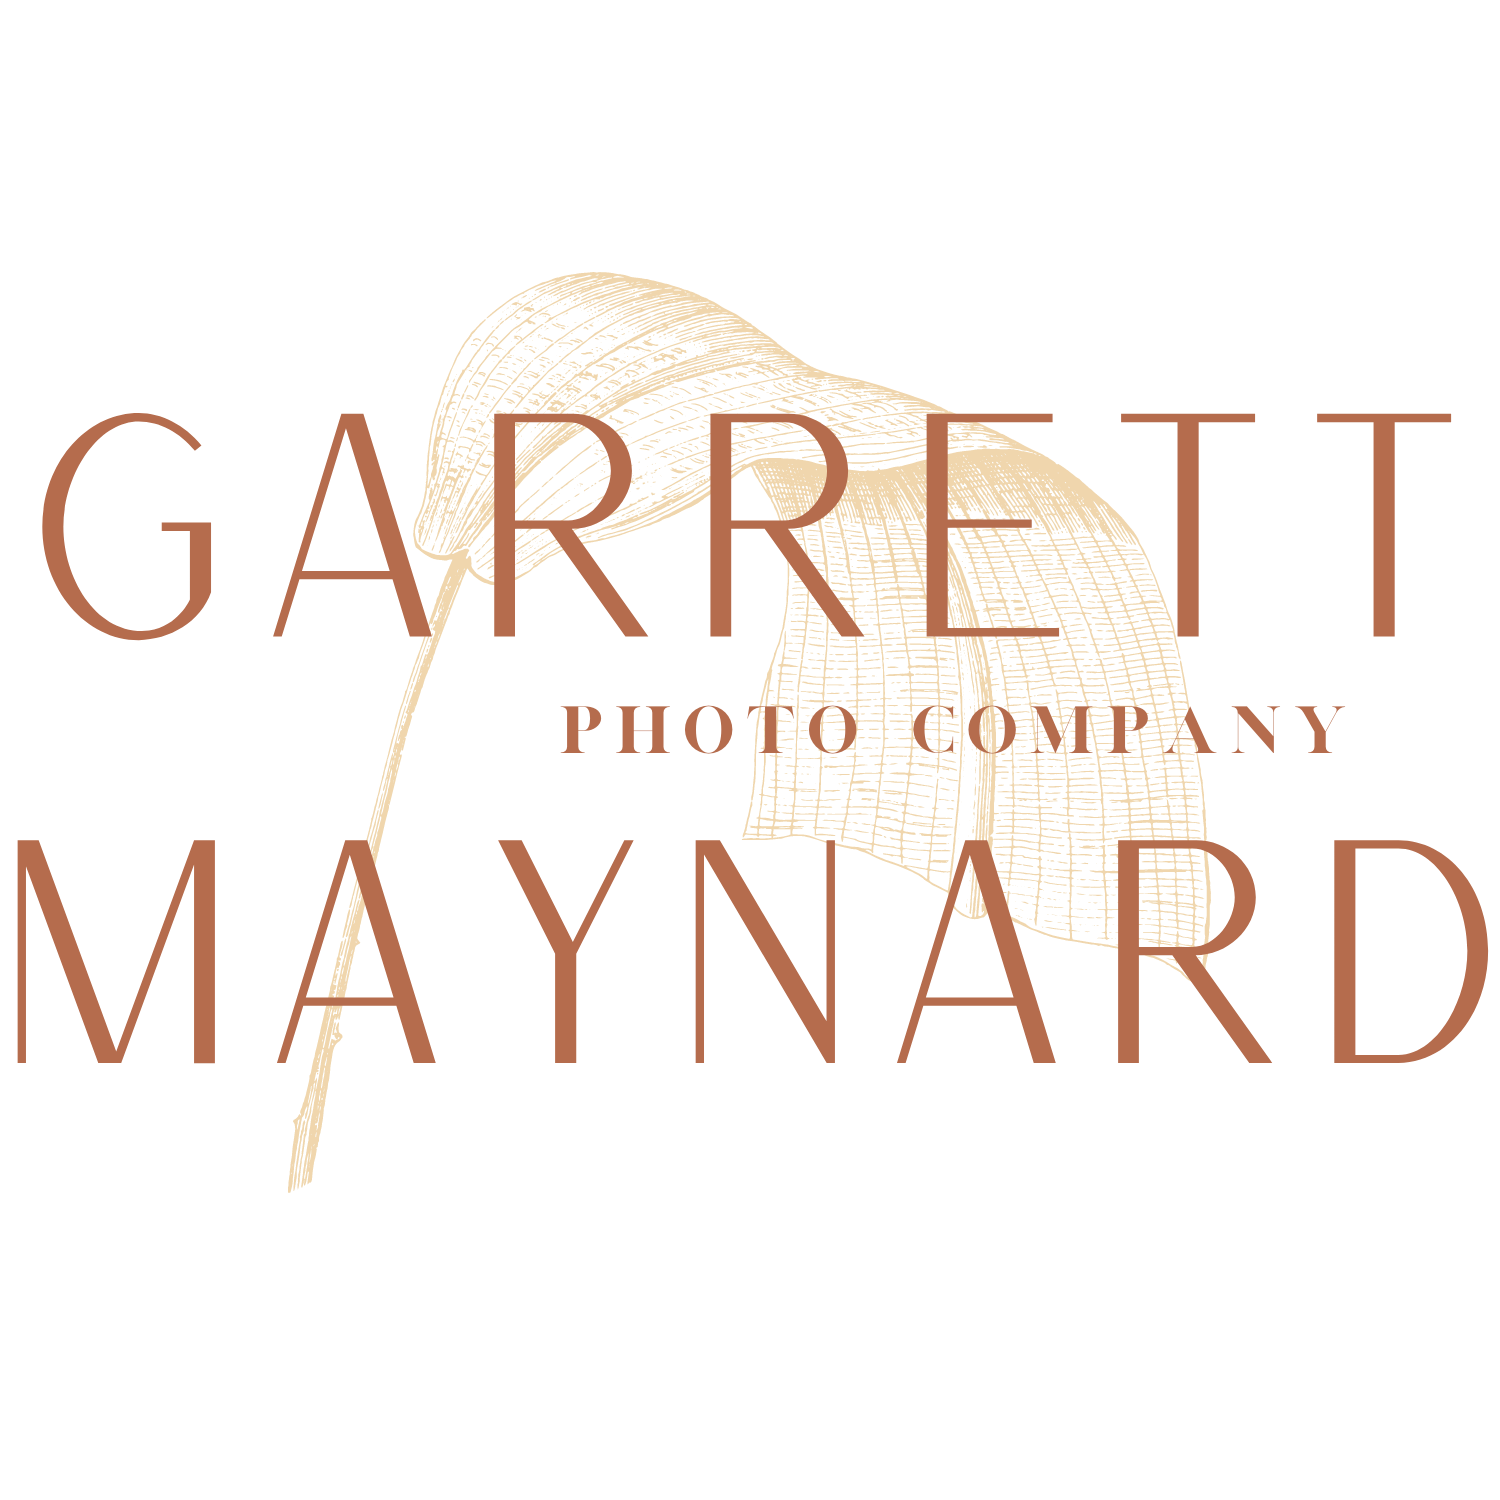 About Garrett Maynard Photo Company